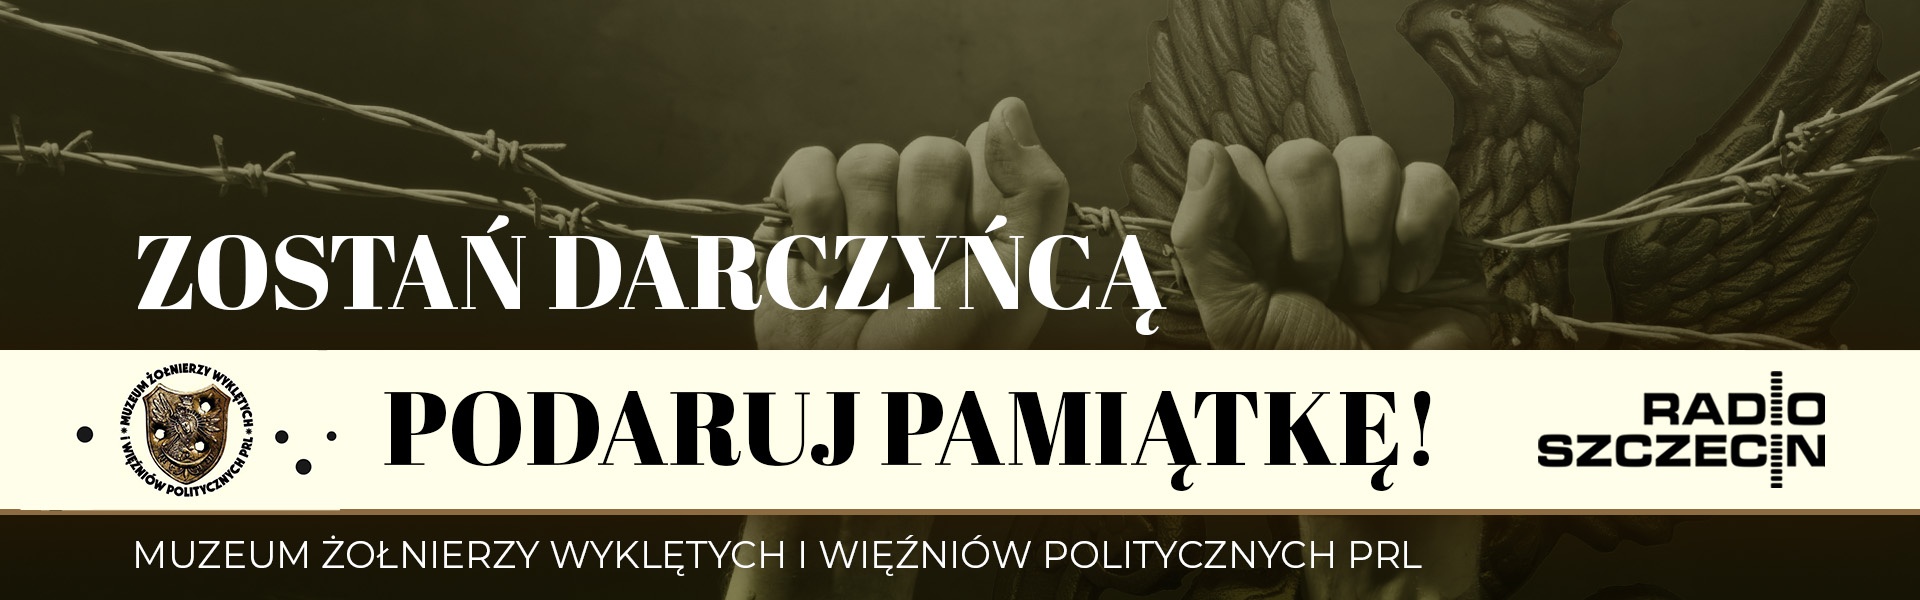 Muzeum Żołnierzy wyklętych i więźniów politycznych PRL